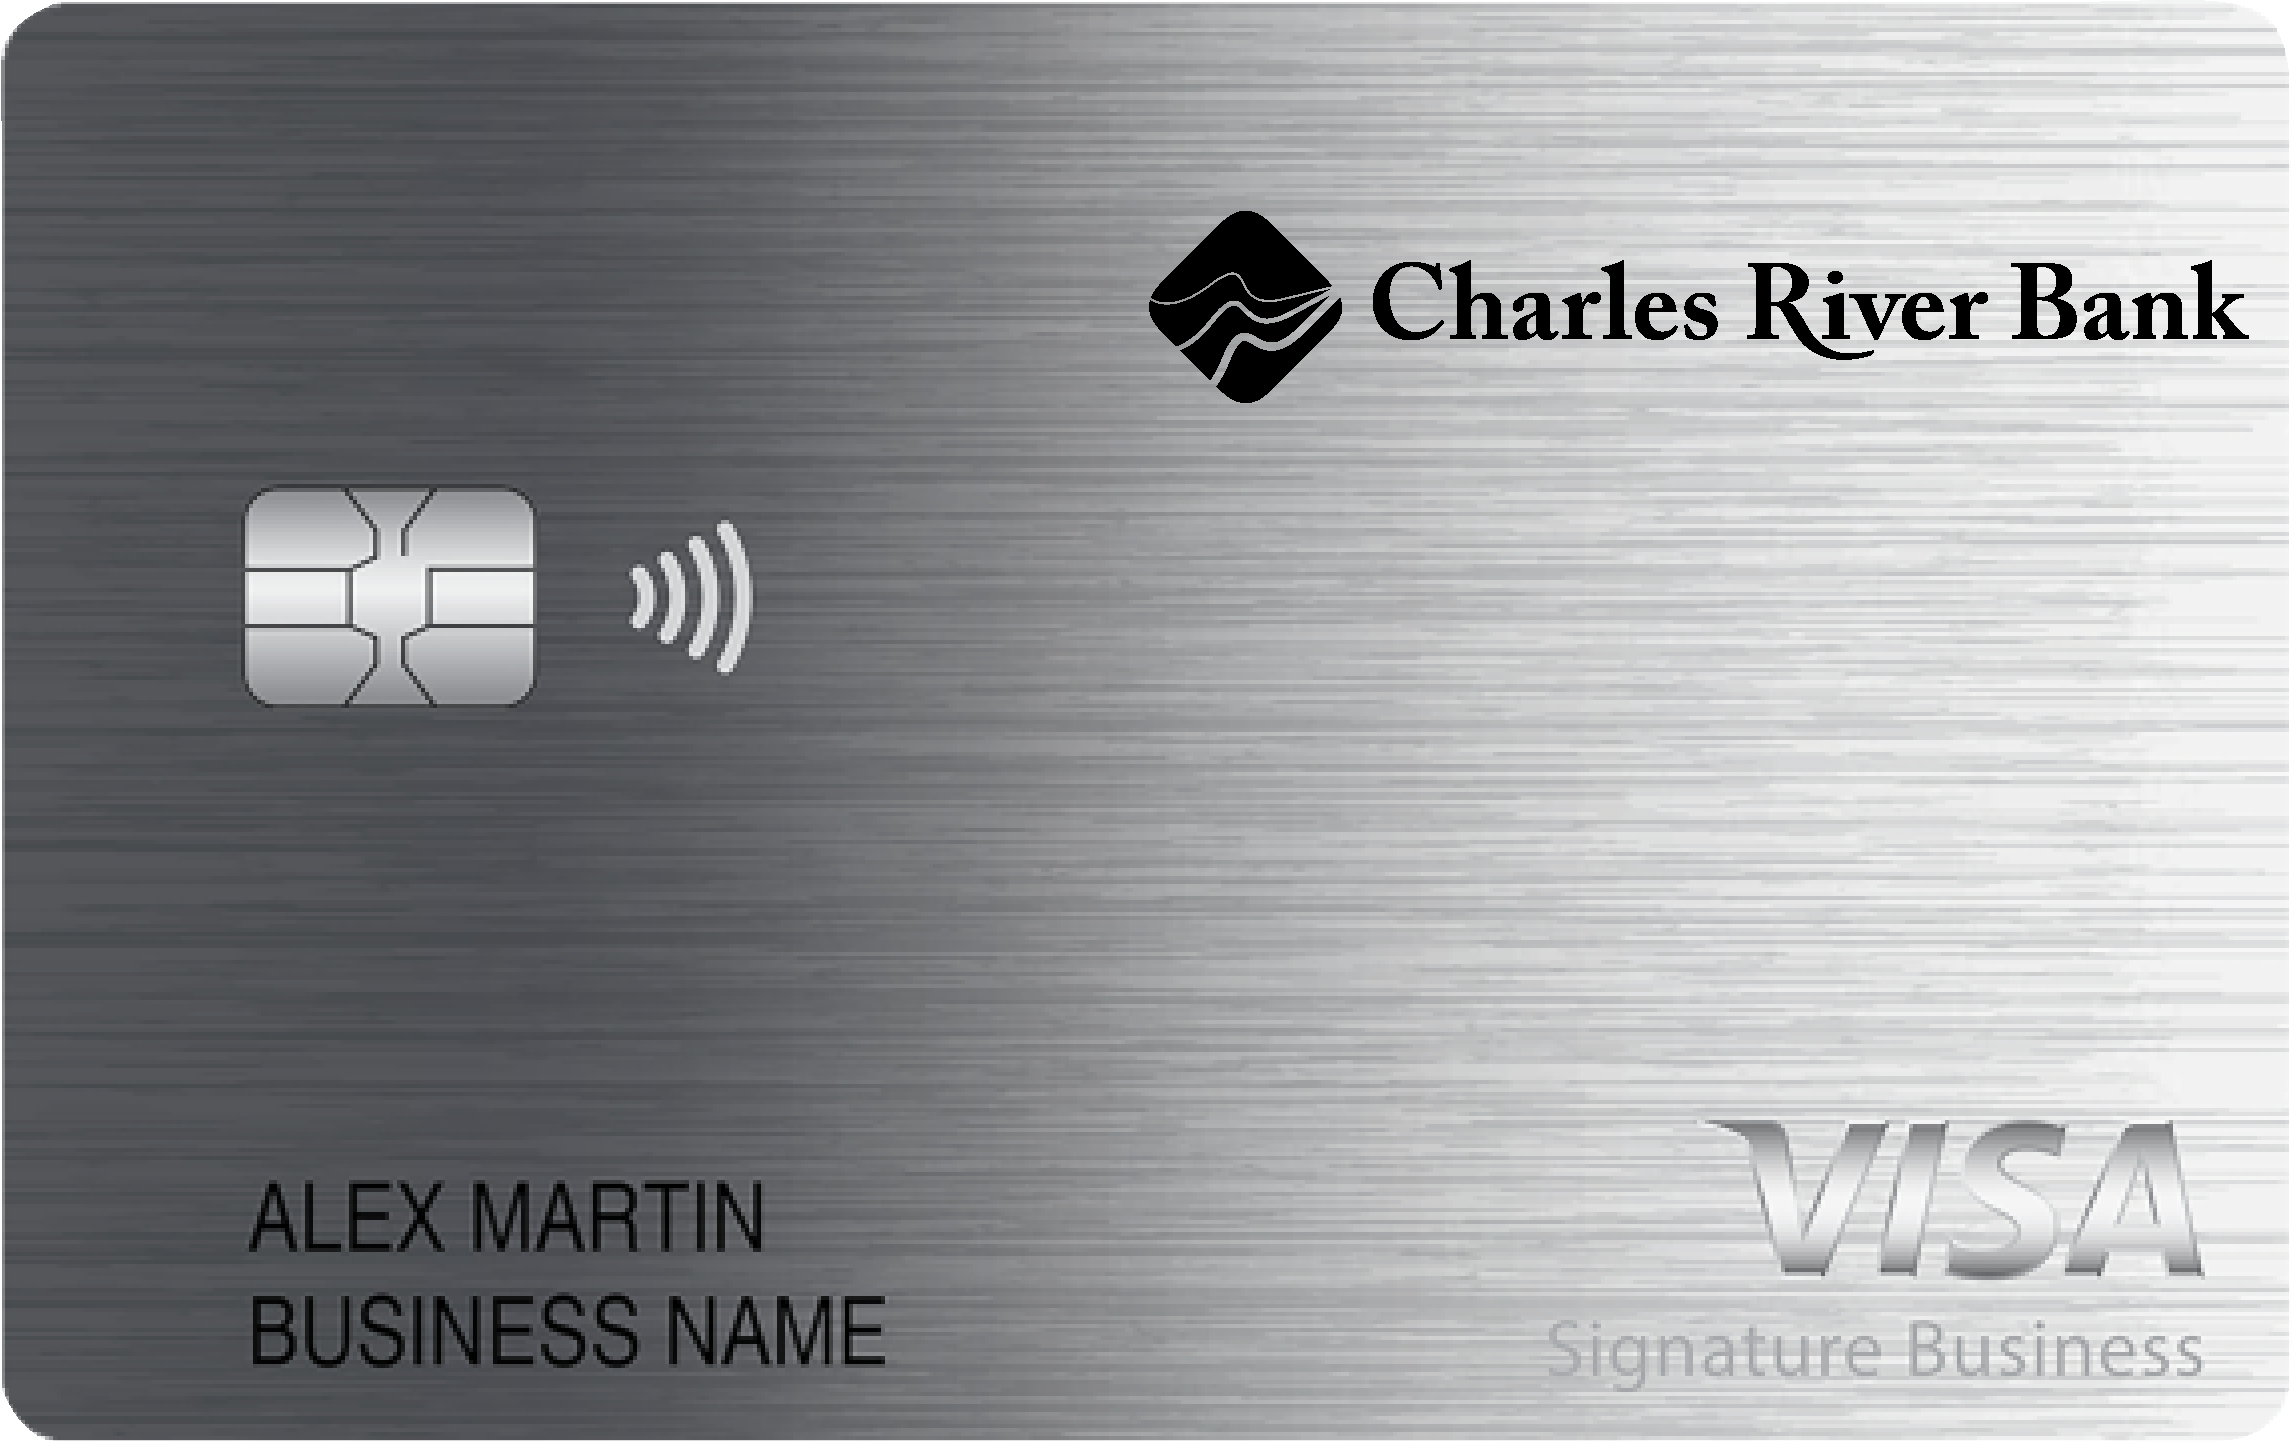 Charles River Bank Smart Business Rewards Card